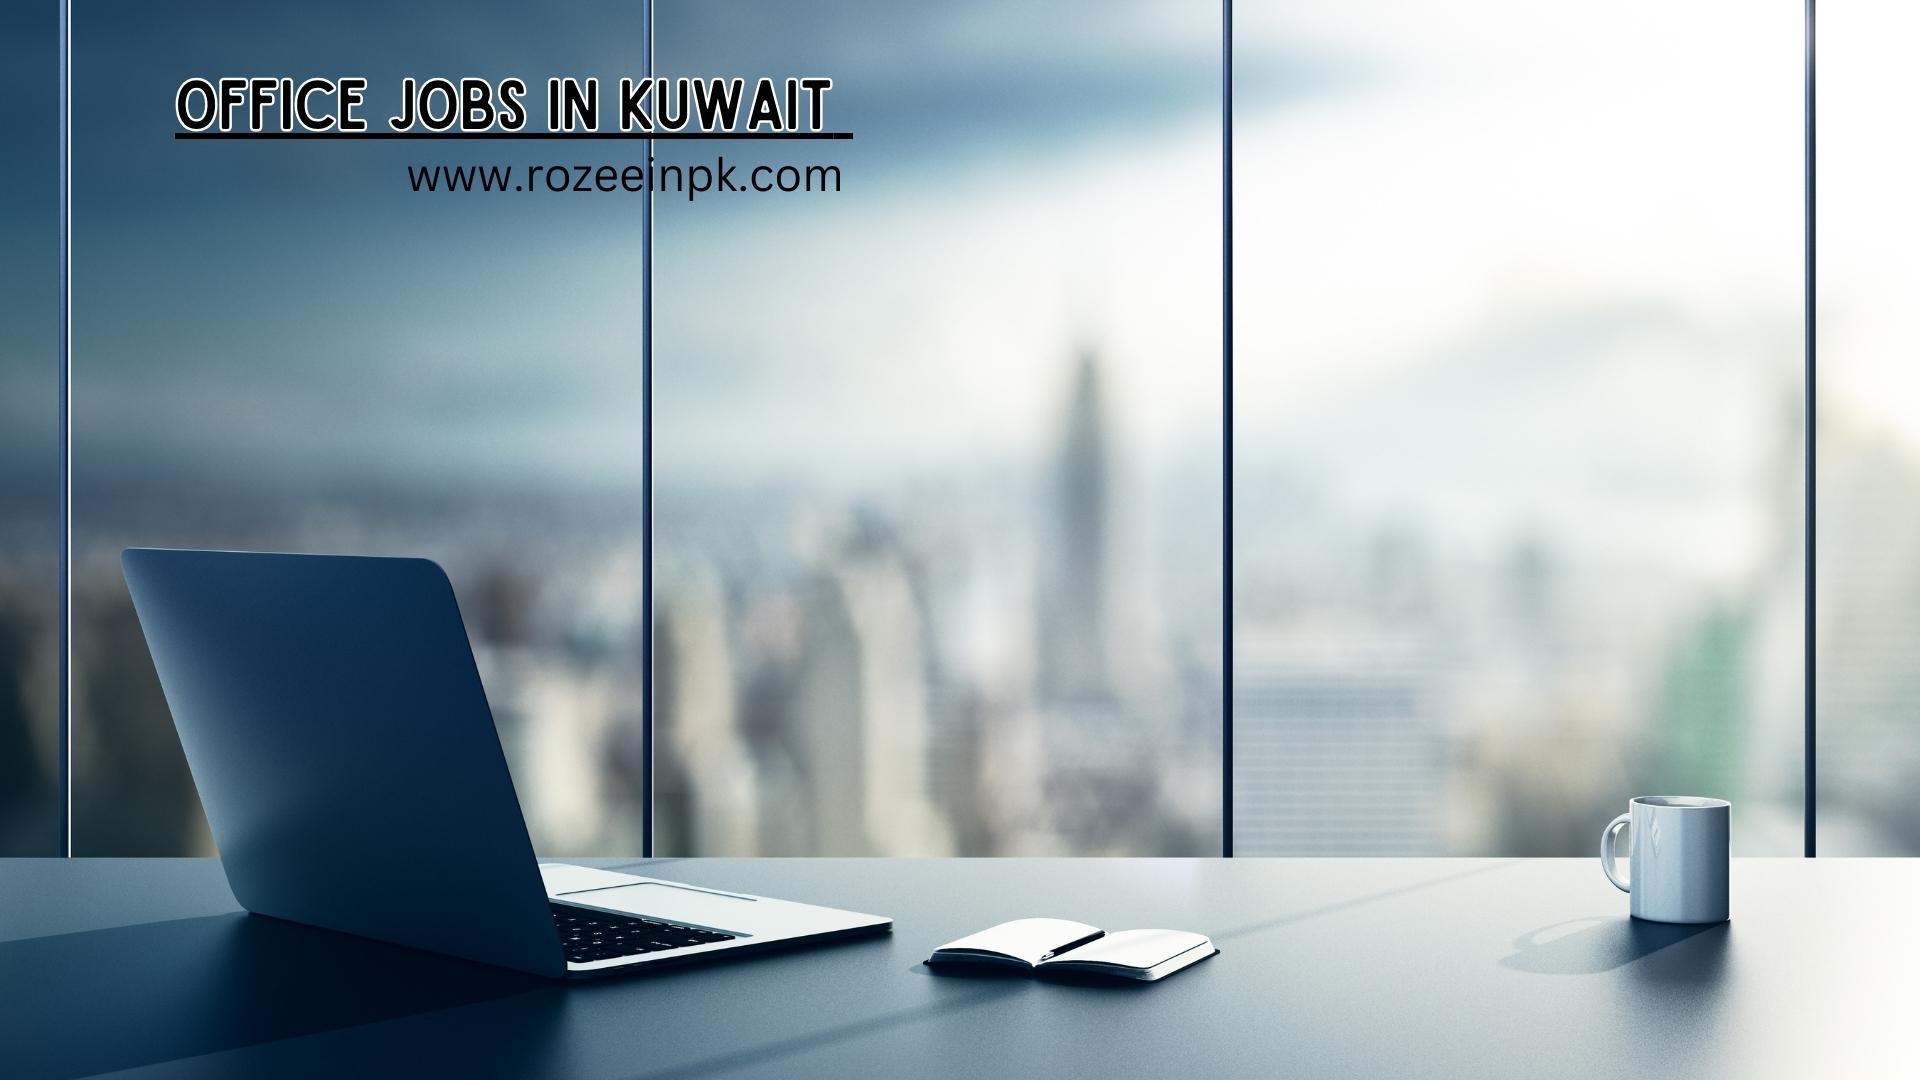 Office jobs in Kuwait 